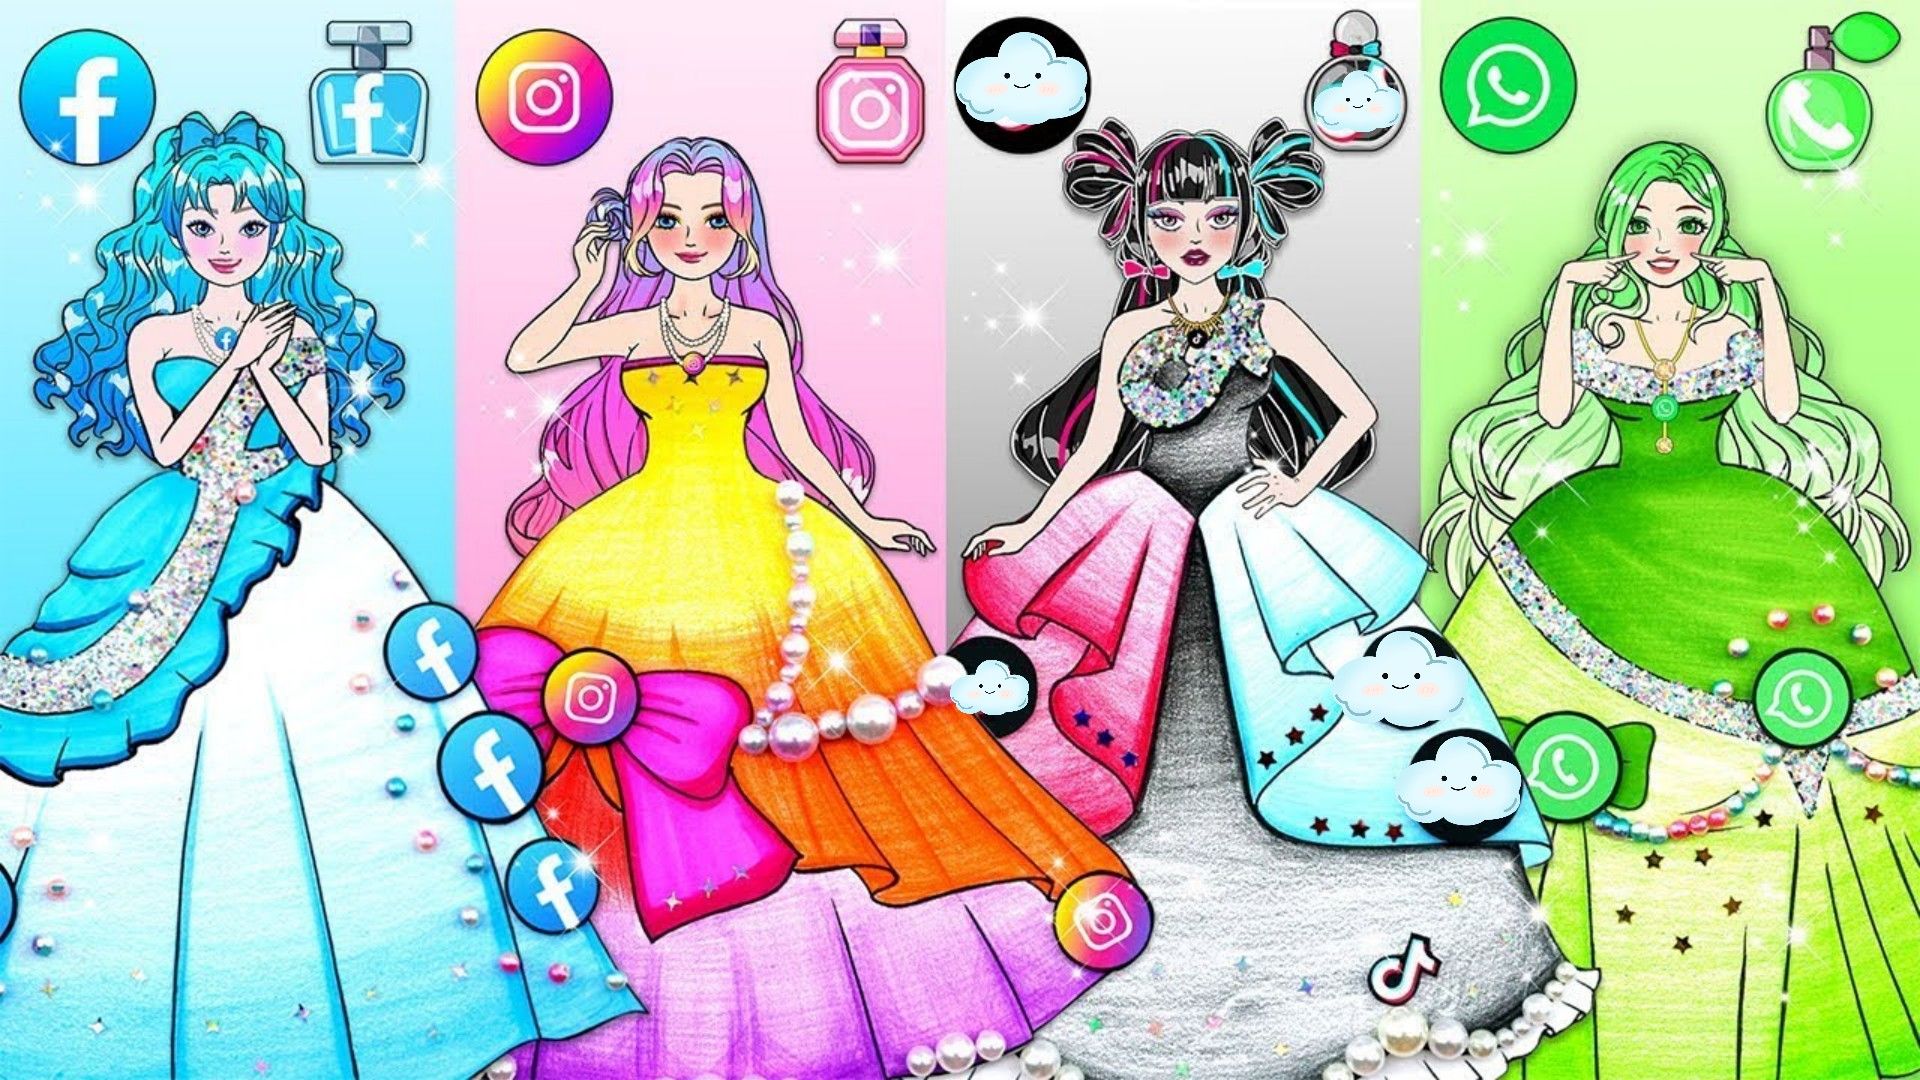 剪纸动画:灰姑娘挑战制作水晶公主裙,四种风格你最喜欢谁呢?